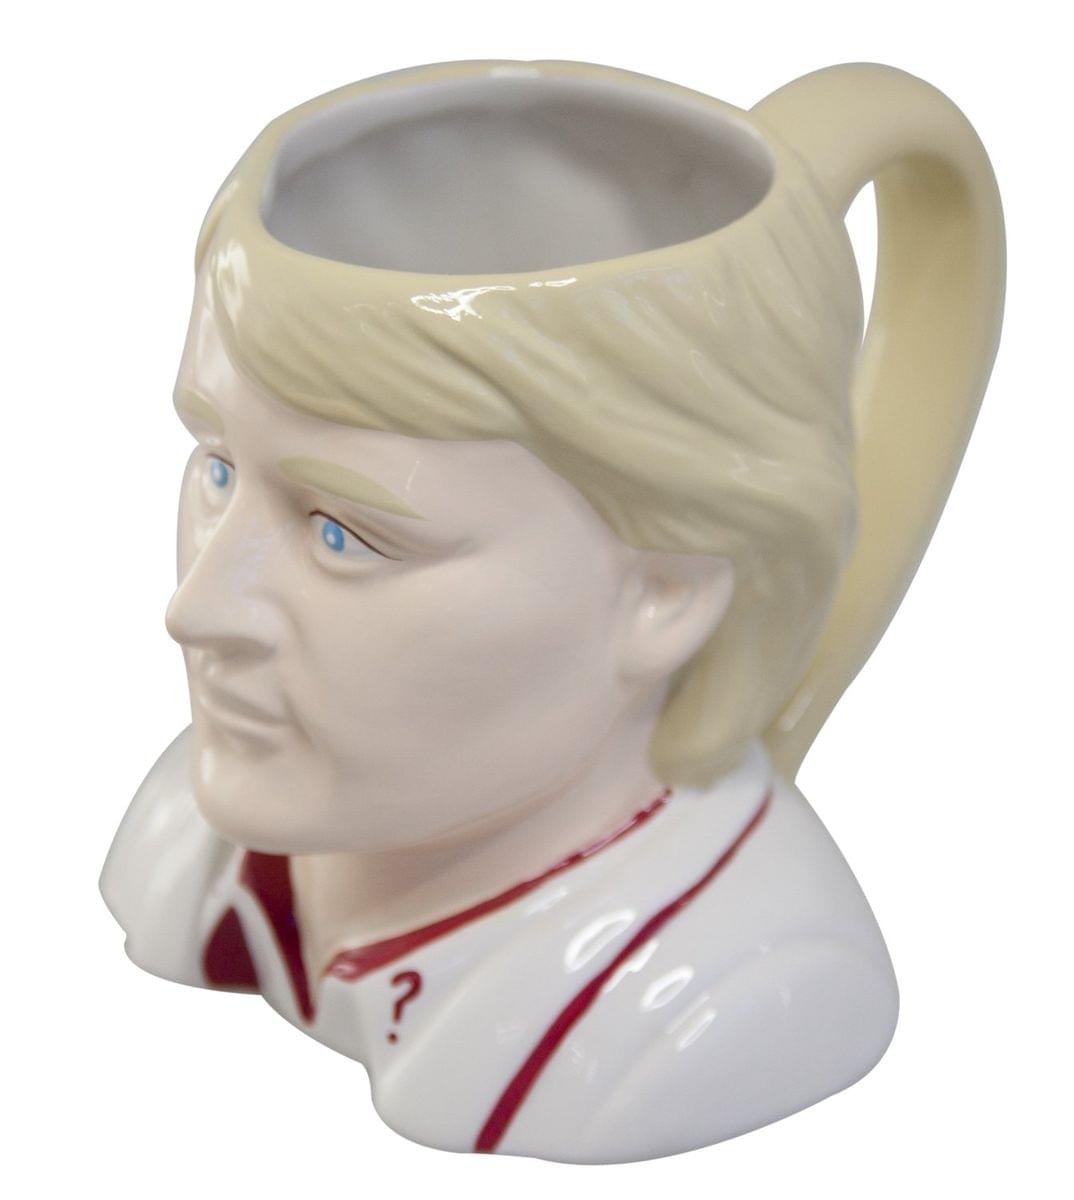 Doctor Who 5th Doctor Peter Davison Ceramic 3D Toby Jug Mug